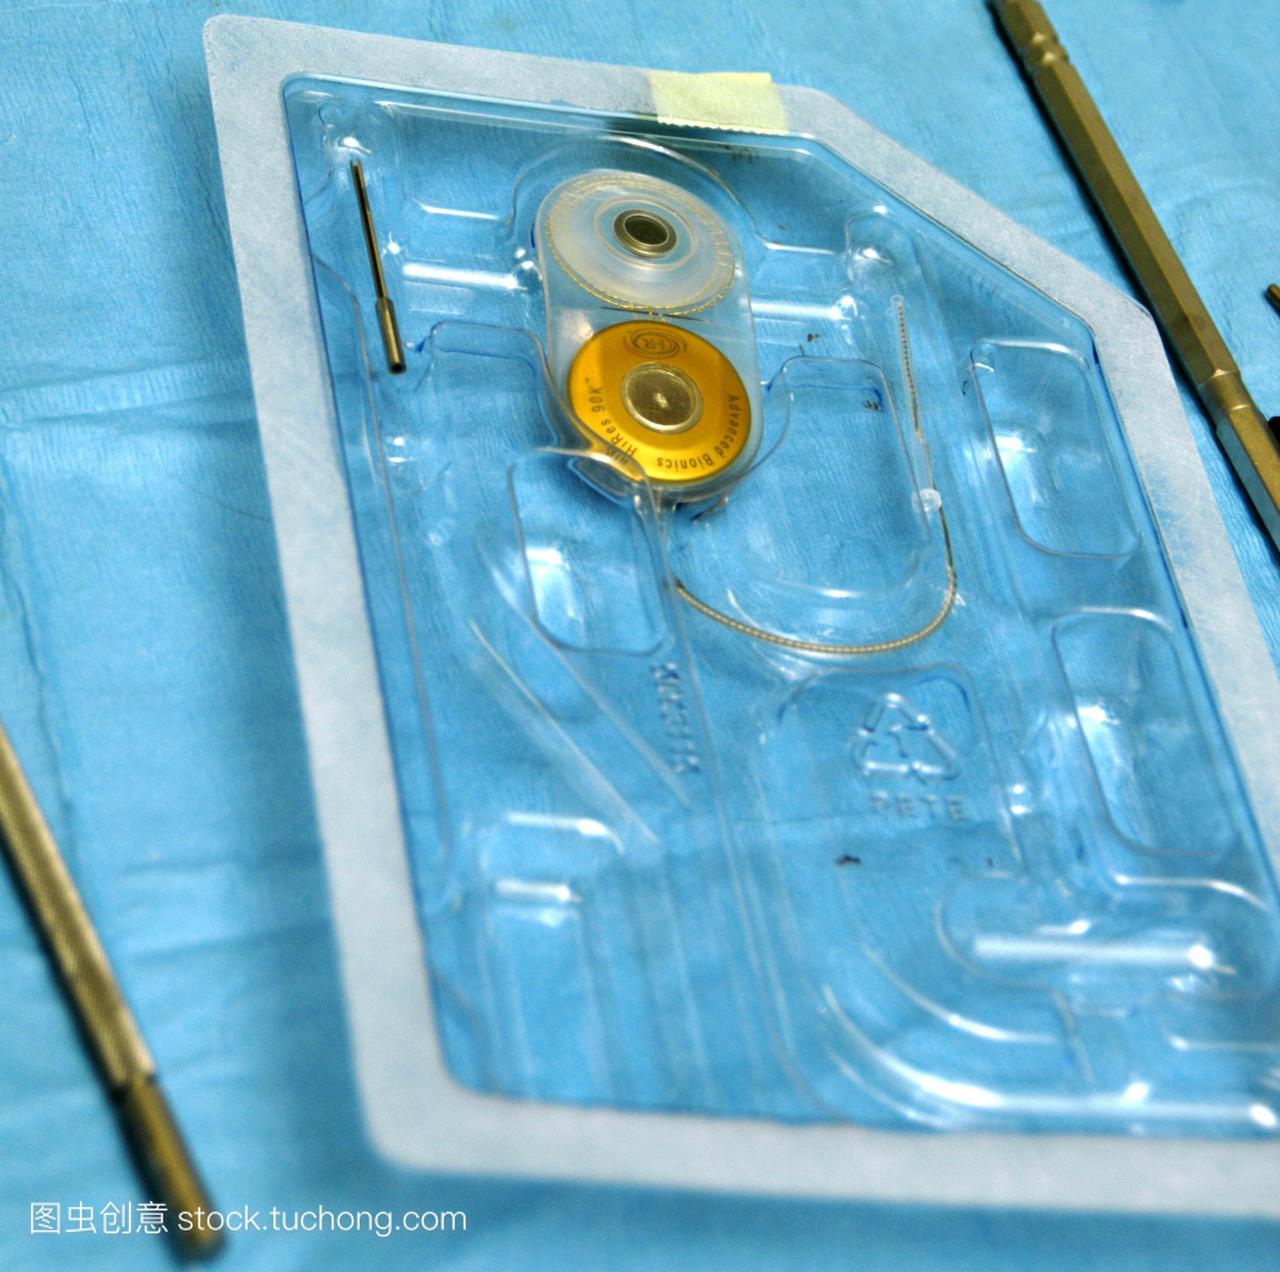 耳蜗植入物的包装,即将用于耳蜗植入手术。植